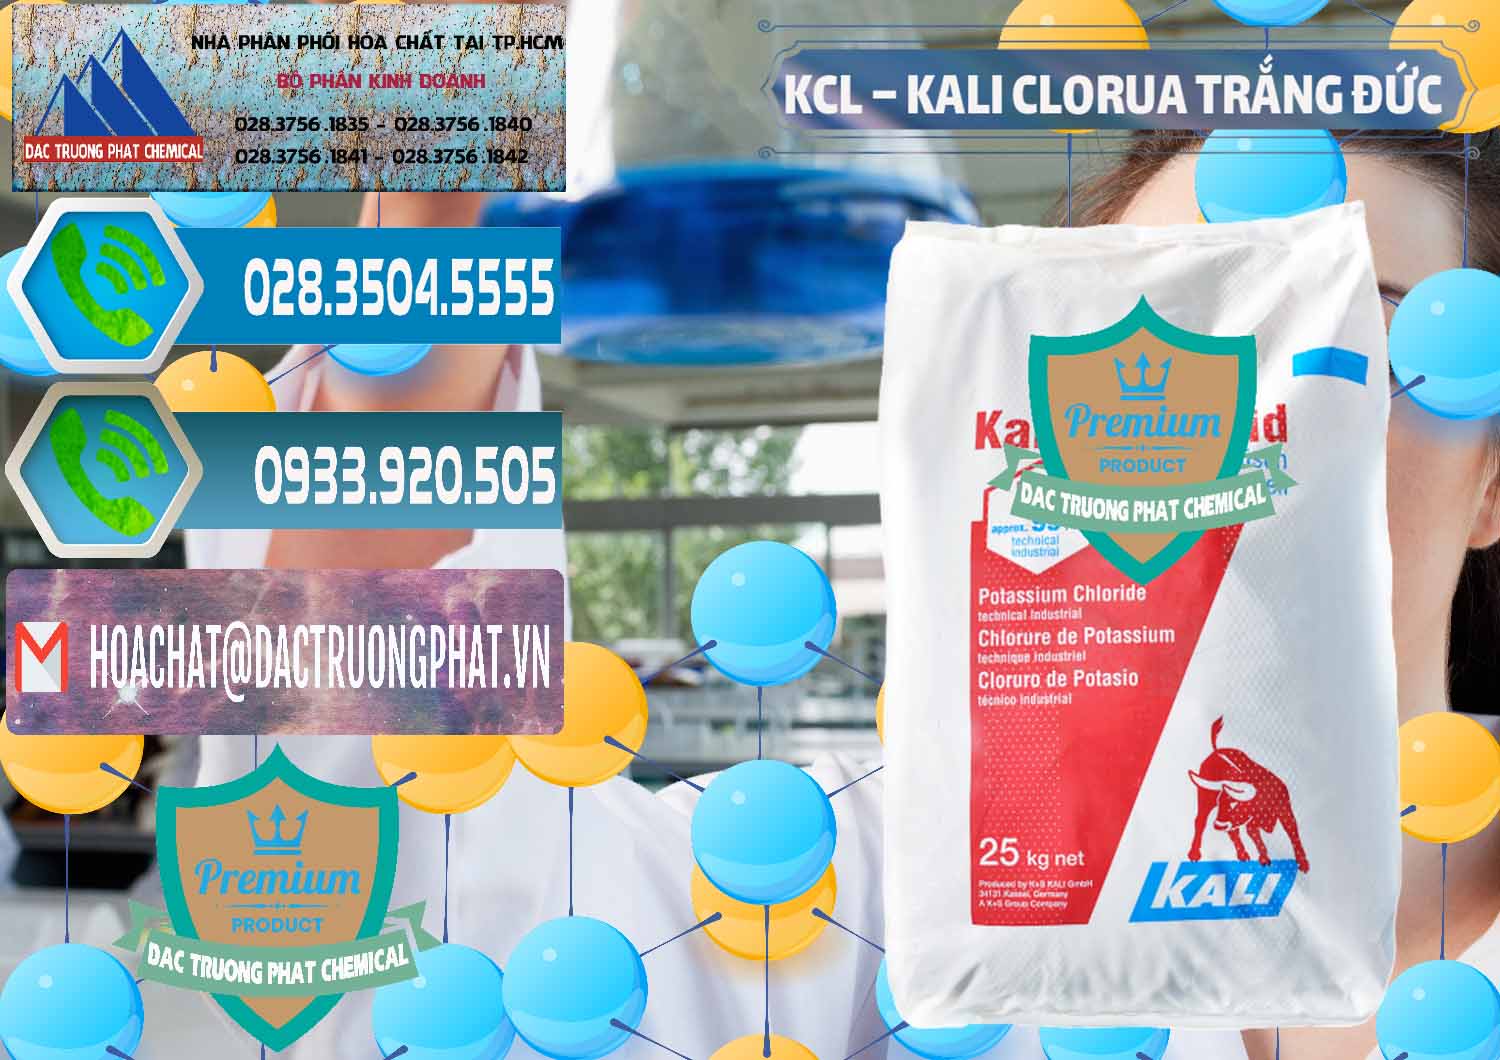 Cty chuyên cung ứng và bán KCL – Kali Clorua Trắng Đức Germany - 0086 - Cty chuyên cung cấp và kinh doanh hóa chất tại TP.HCM - congtyhoachat.net